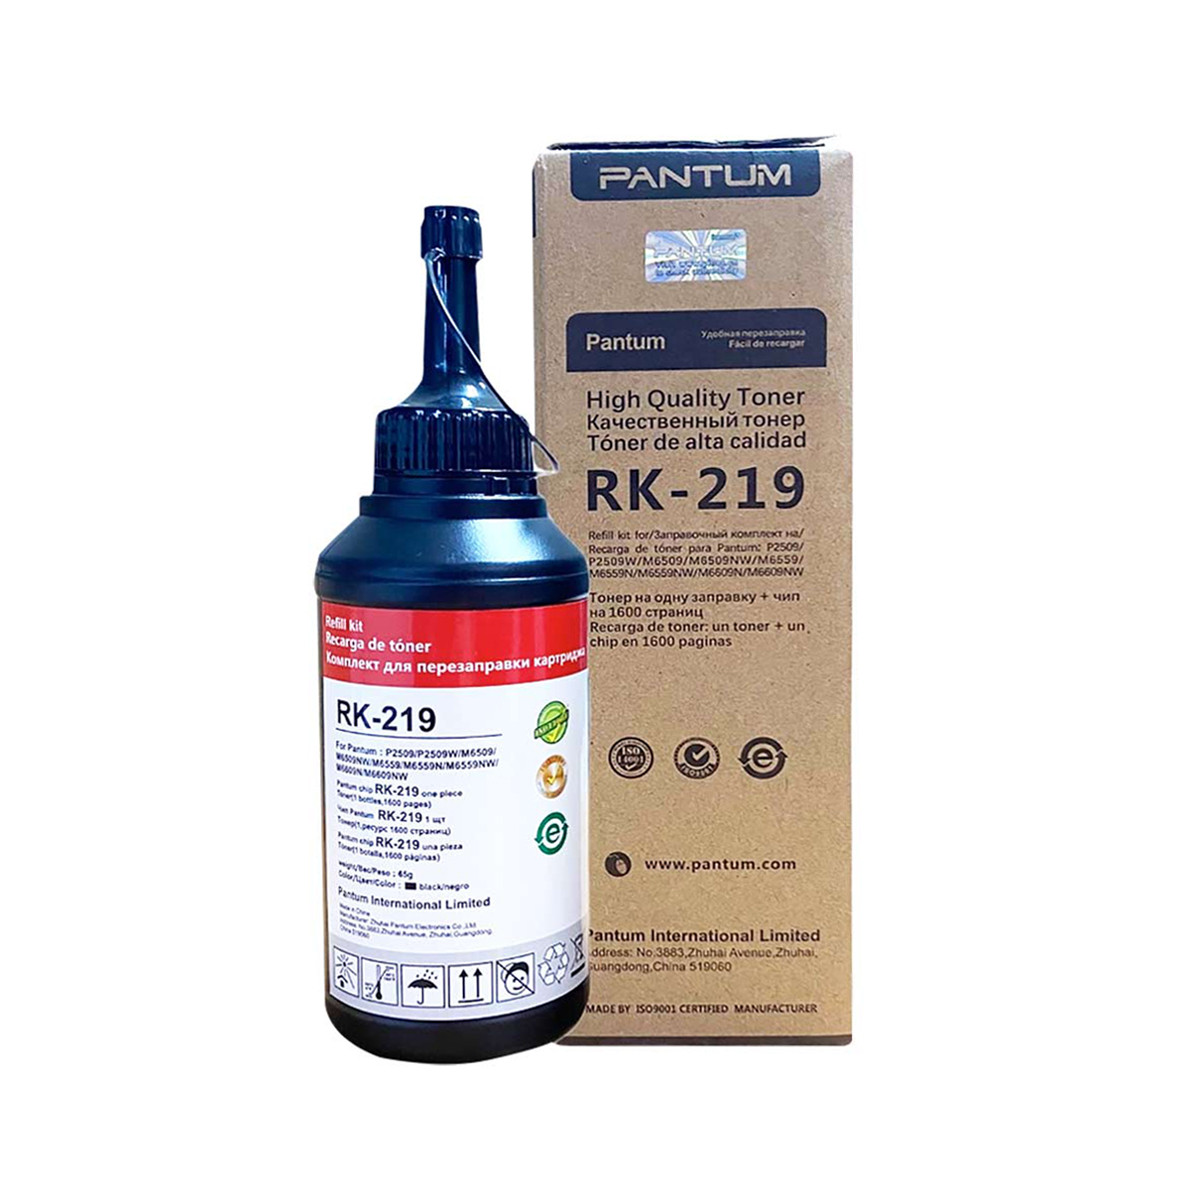 Toner Refil Pantum RK-219 RK219 | Para Toner PD-219 | P2509W P2509 M6559NW M6559 | Original 1.6k